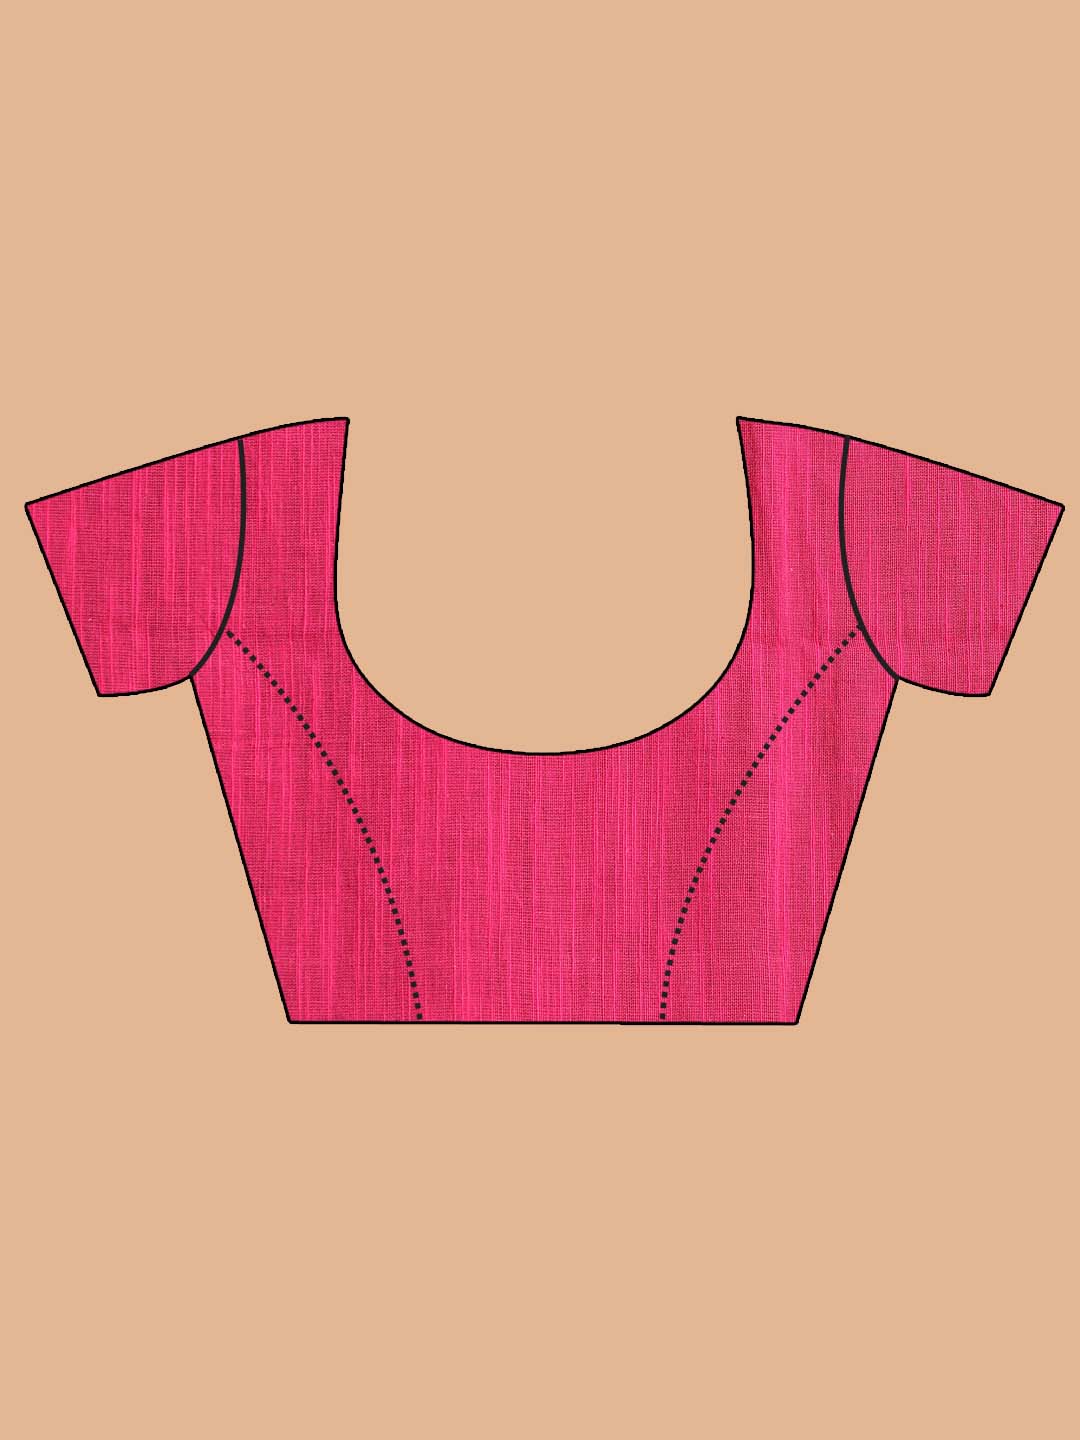 Indethnic Pink Bengal Handloom Pure Cotton Saree Work Saree - Blouse Piece View